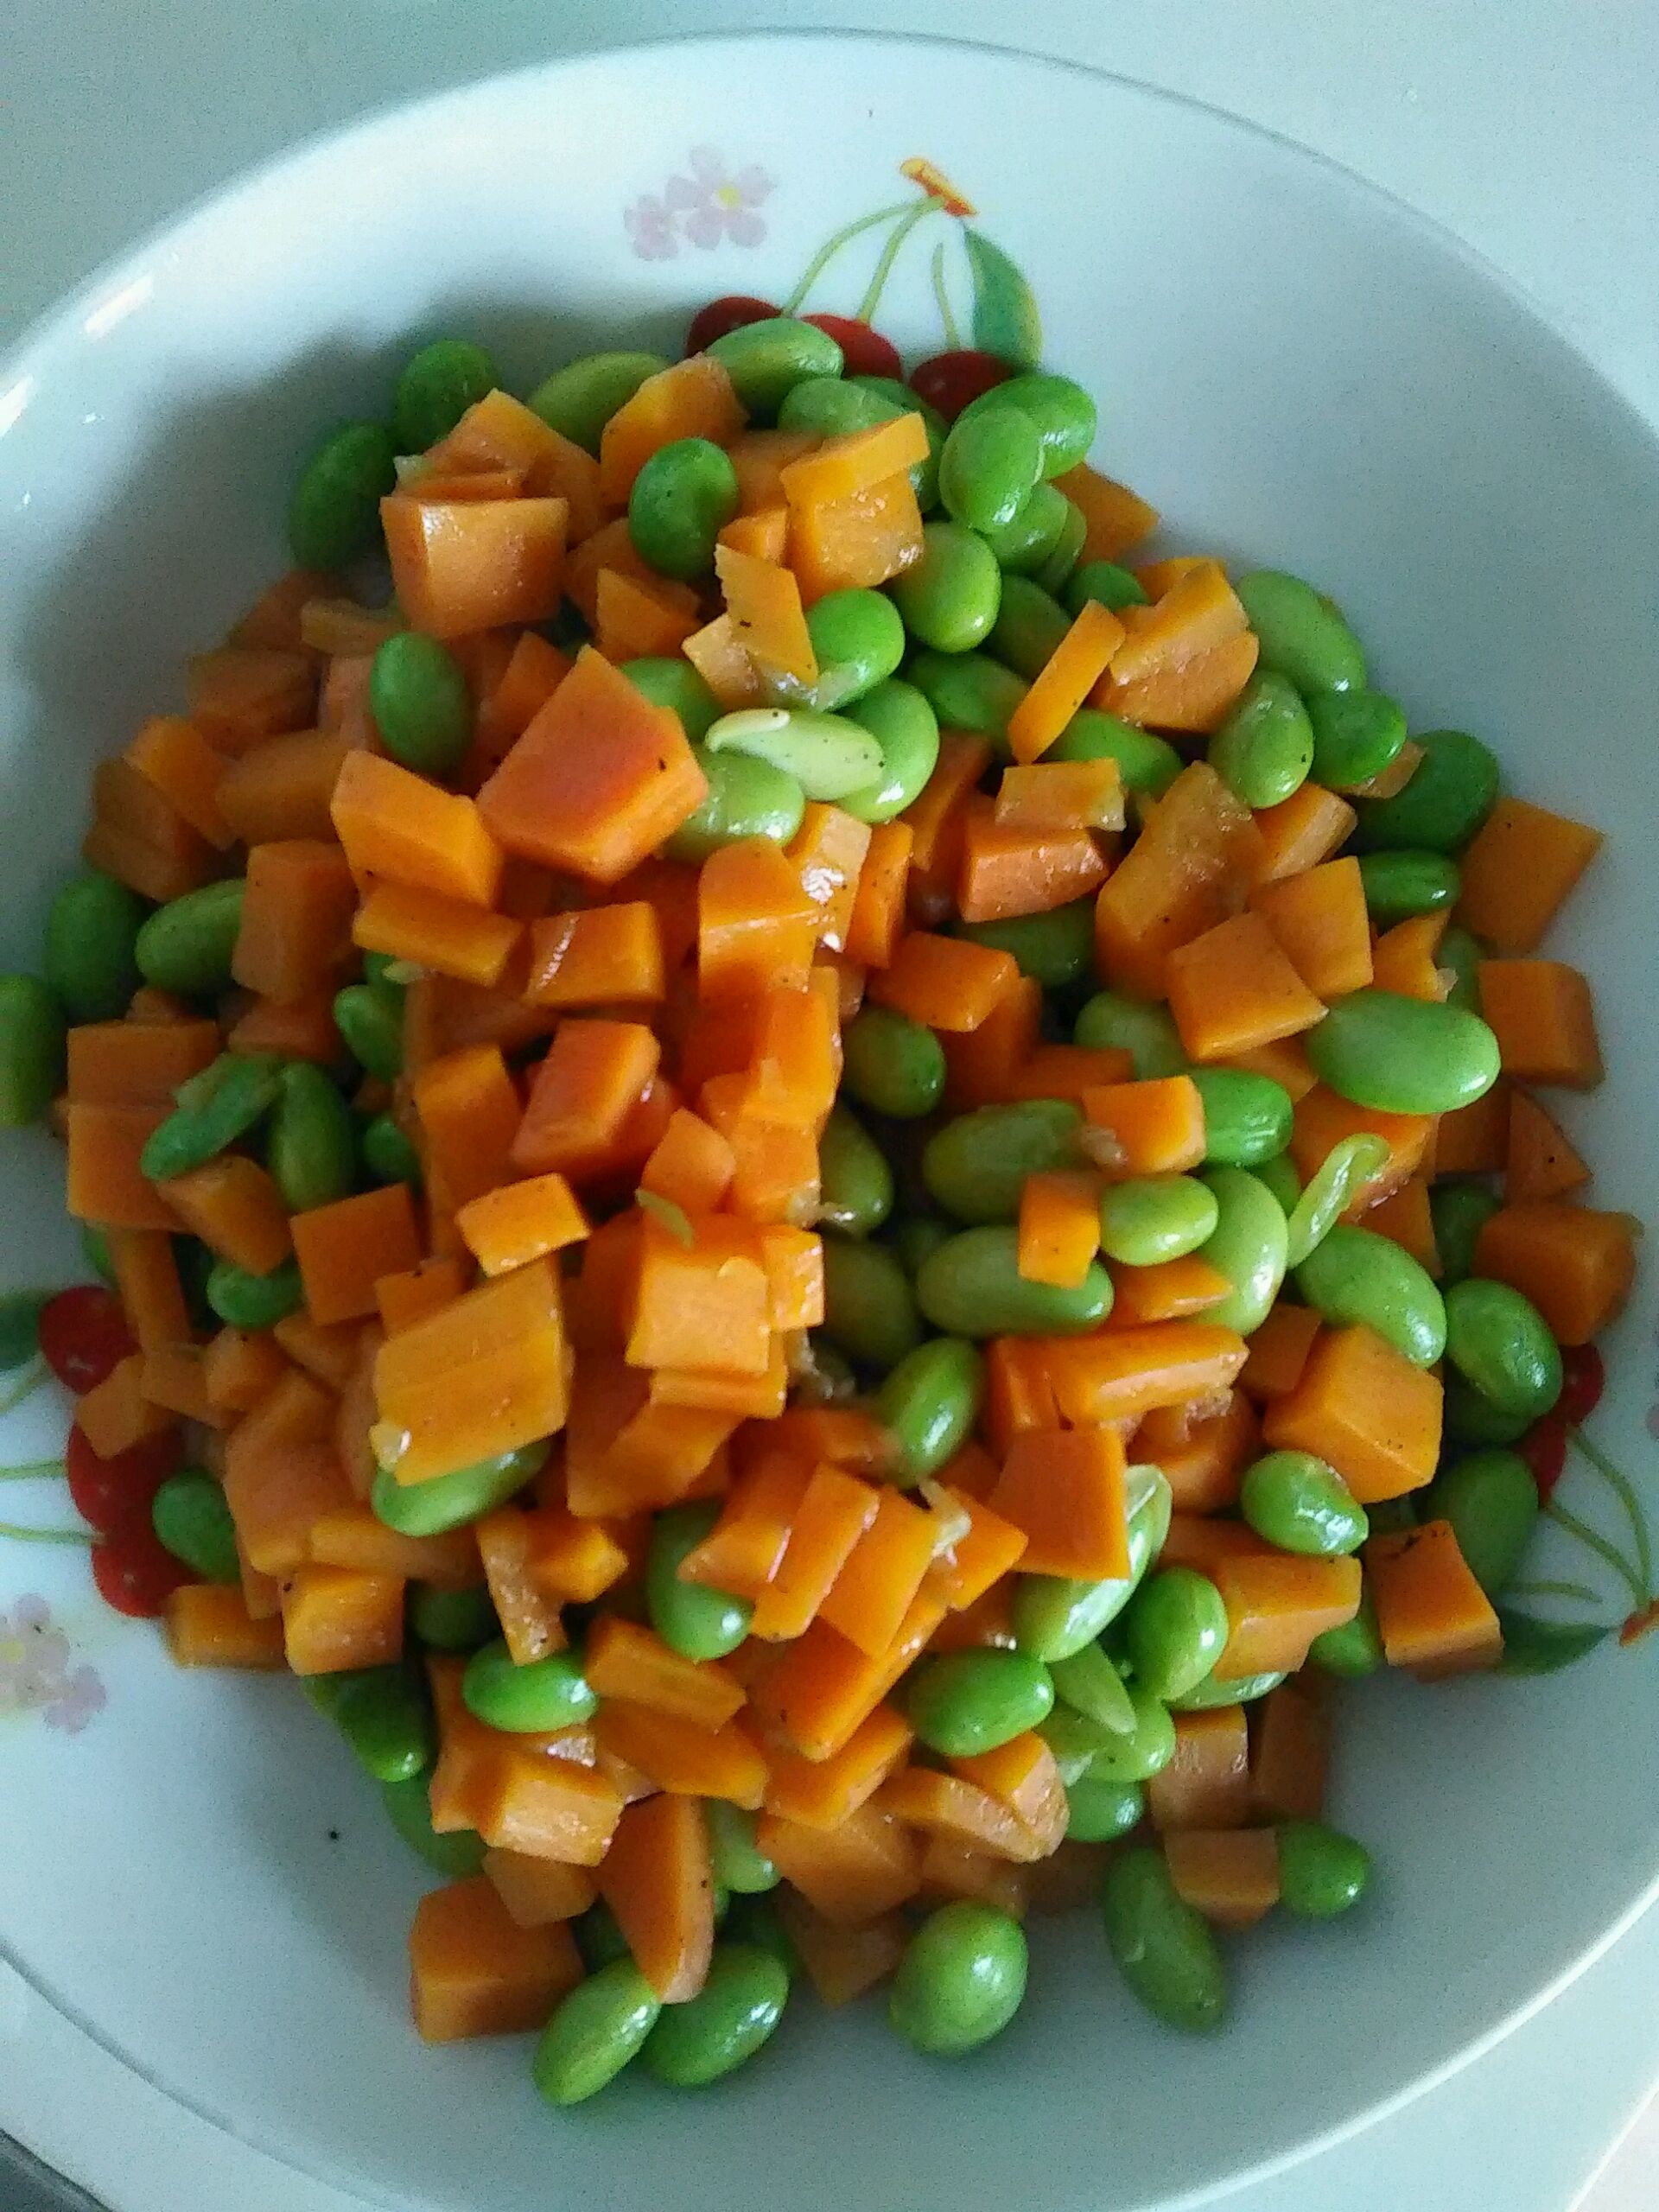 胡萝卜玉米粒,胡萝卜玉米粒的家常做法 - 美食杰胡萝卜玉米粒做法大全